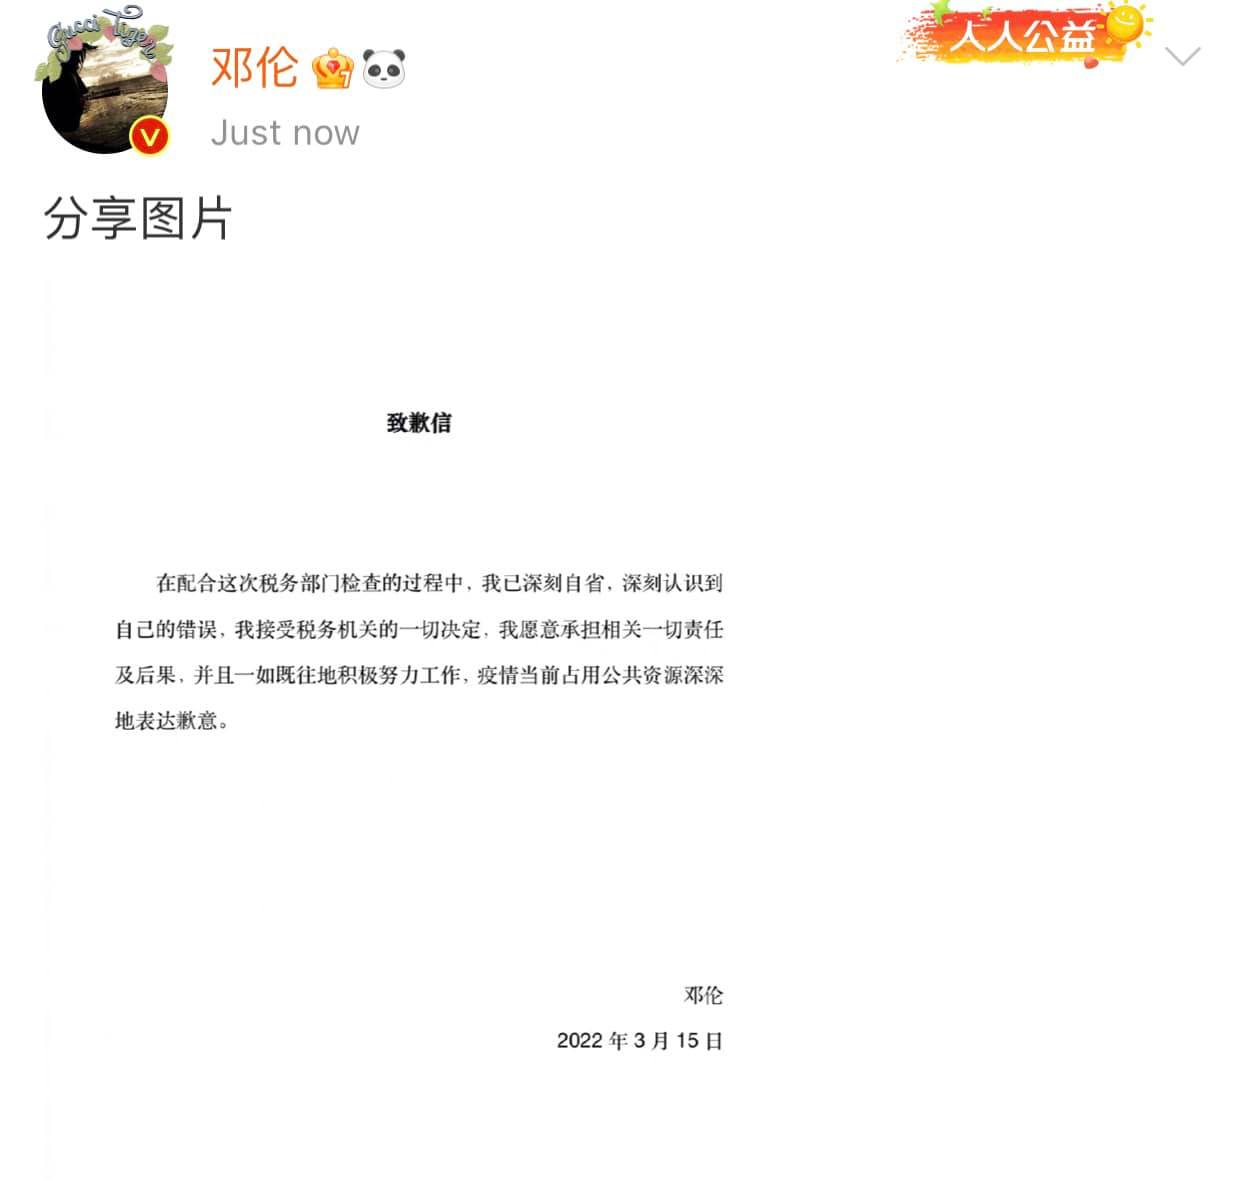 Ngay sau khi scandal trốn thuế nổ ra, nam diễn viên họ Đặng đã đăng lên trang cá nhân bài viết thừa nhận và xin lỗi cho việc làm sai trái của mình. 